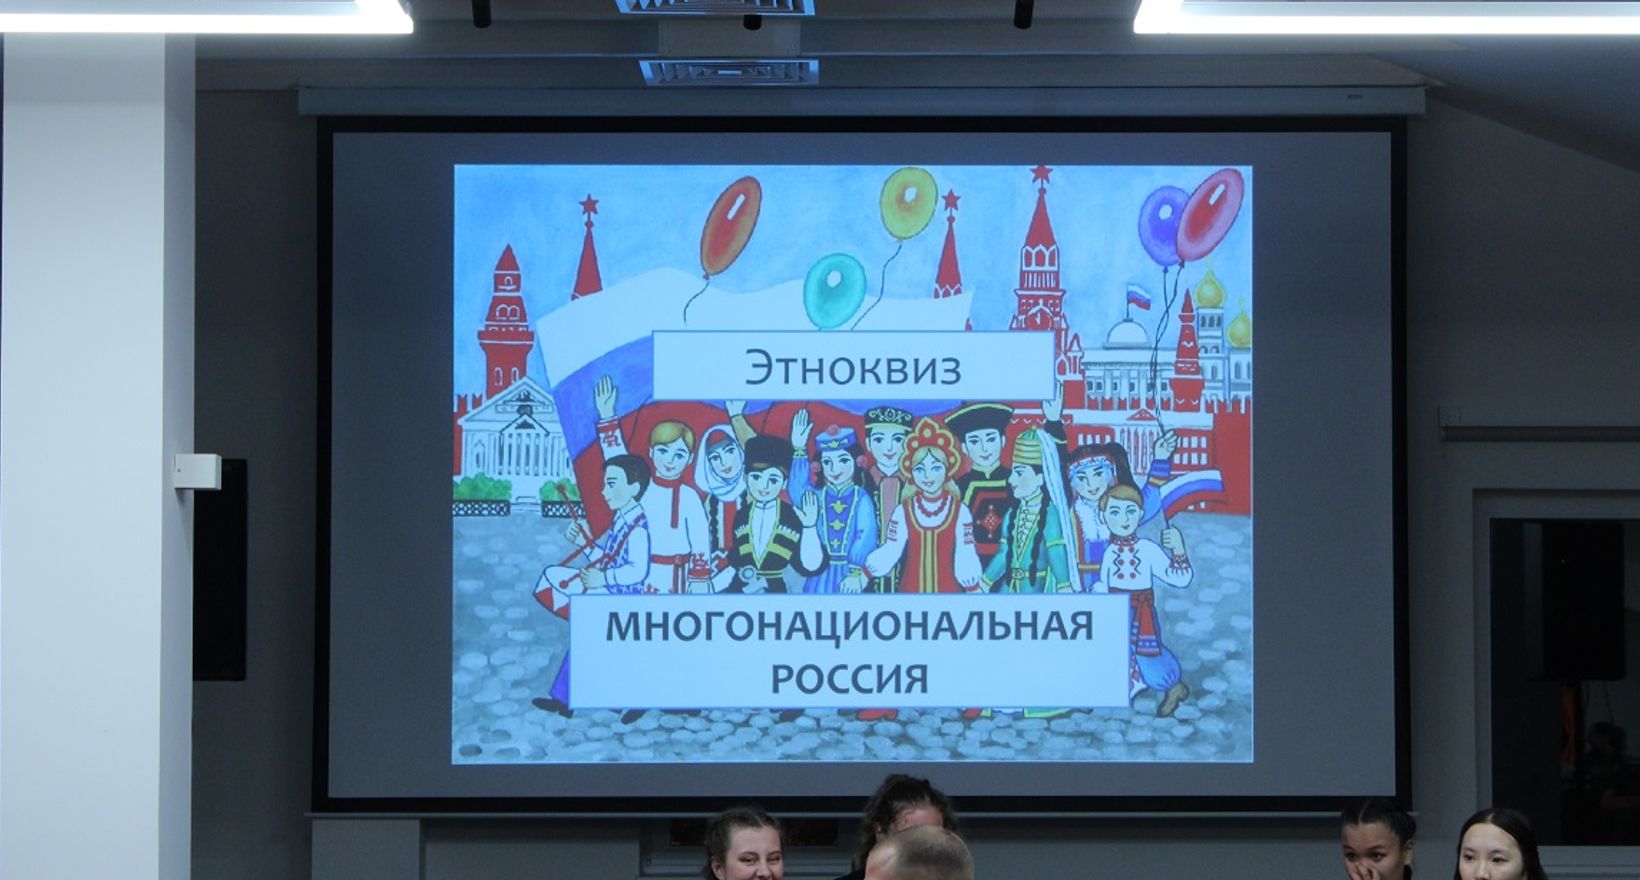 Этноквиз "Многонациональная Россия"